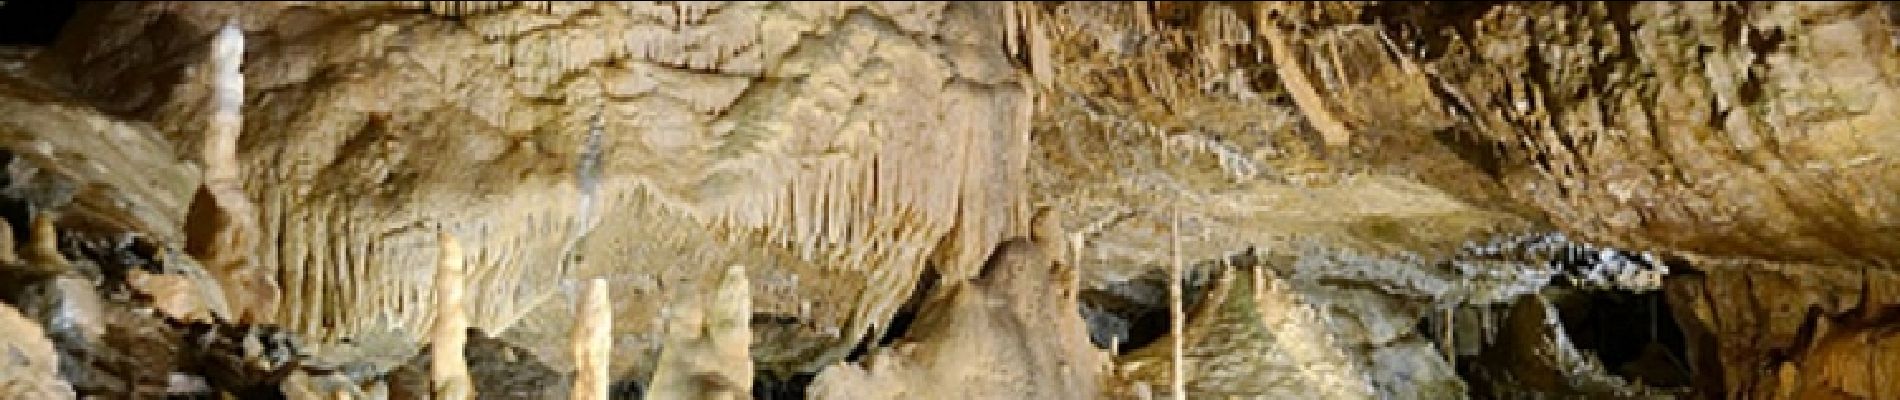 Point of interest Hotton - Grottes de Hotton - Bon plan - A visiter à proximité de la balade - Photo